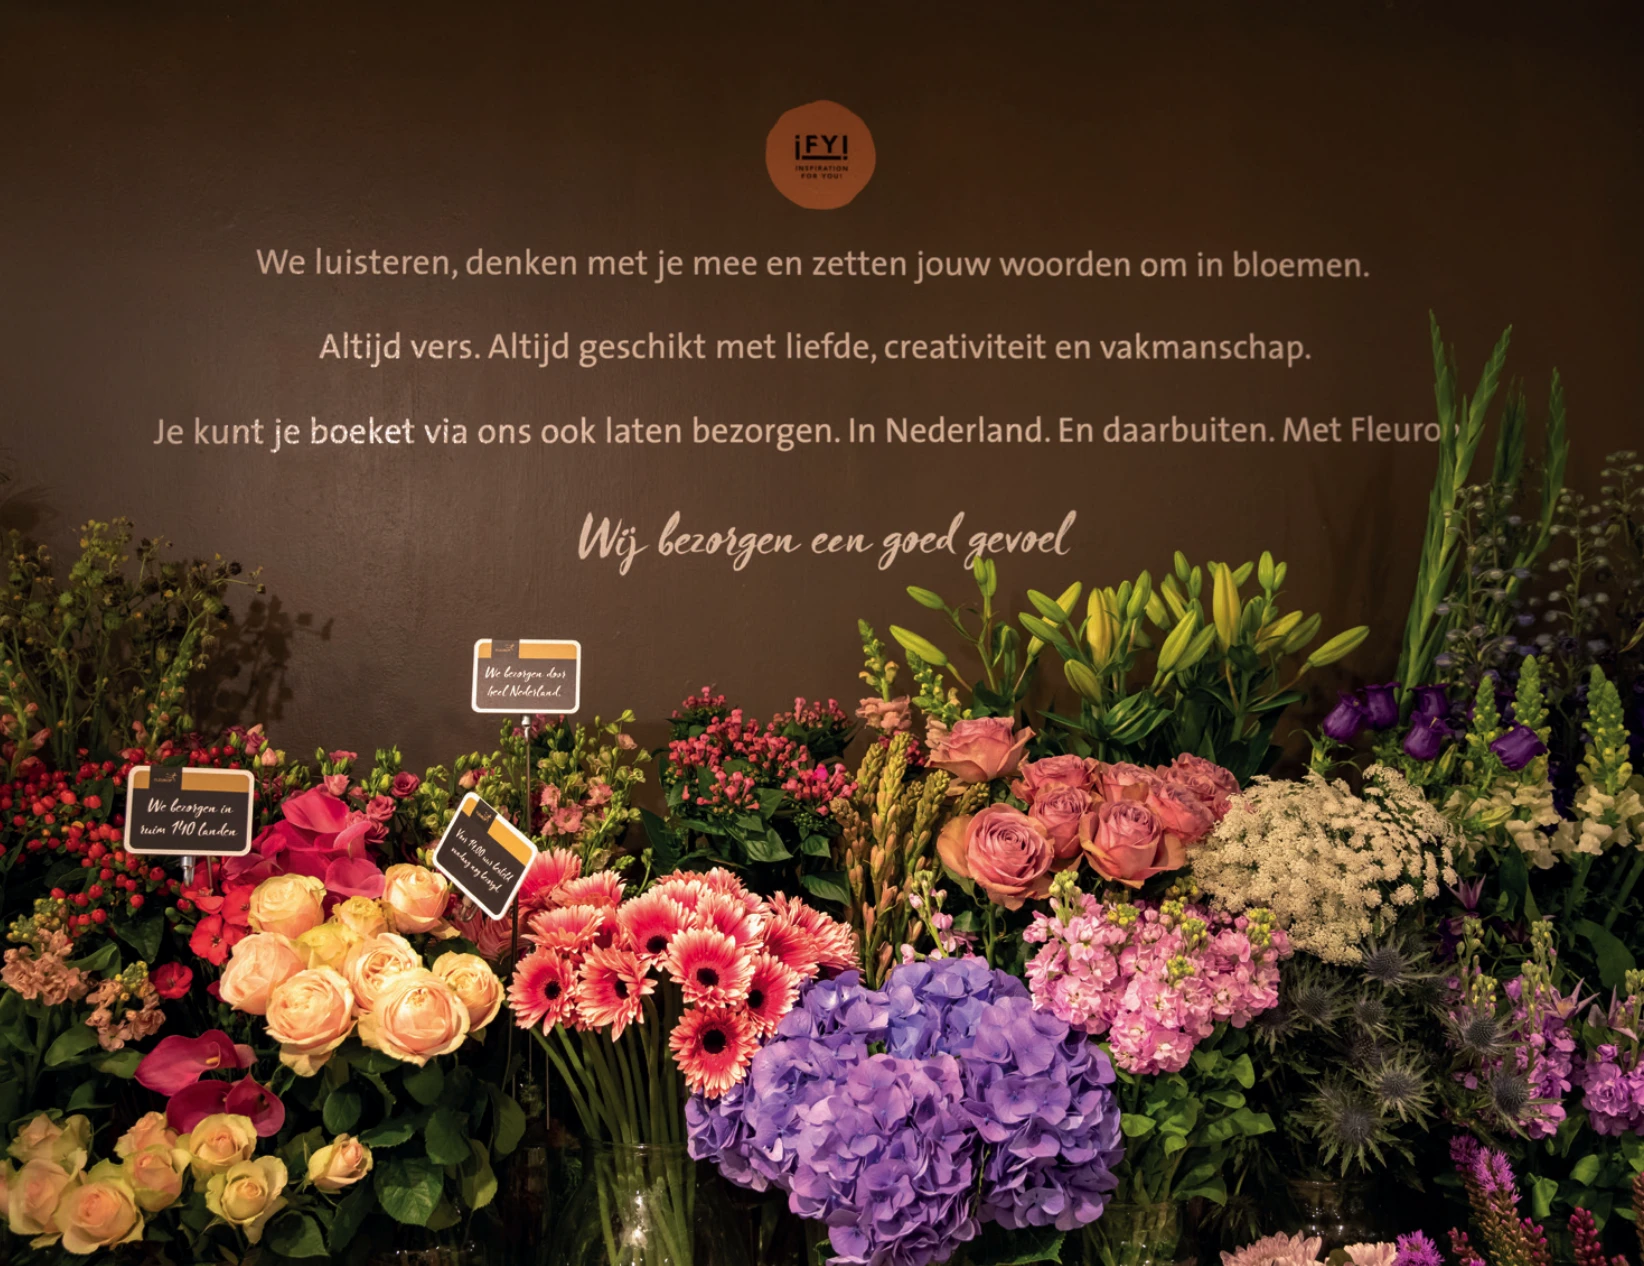 Flowershop Sluipwijk Bloemen bestellen.